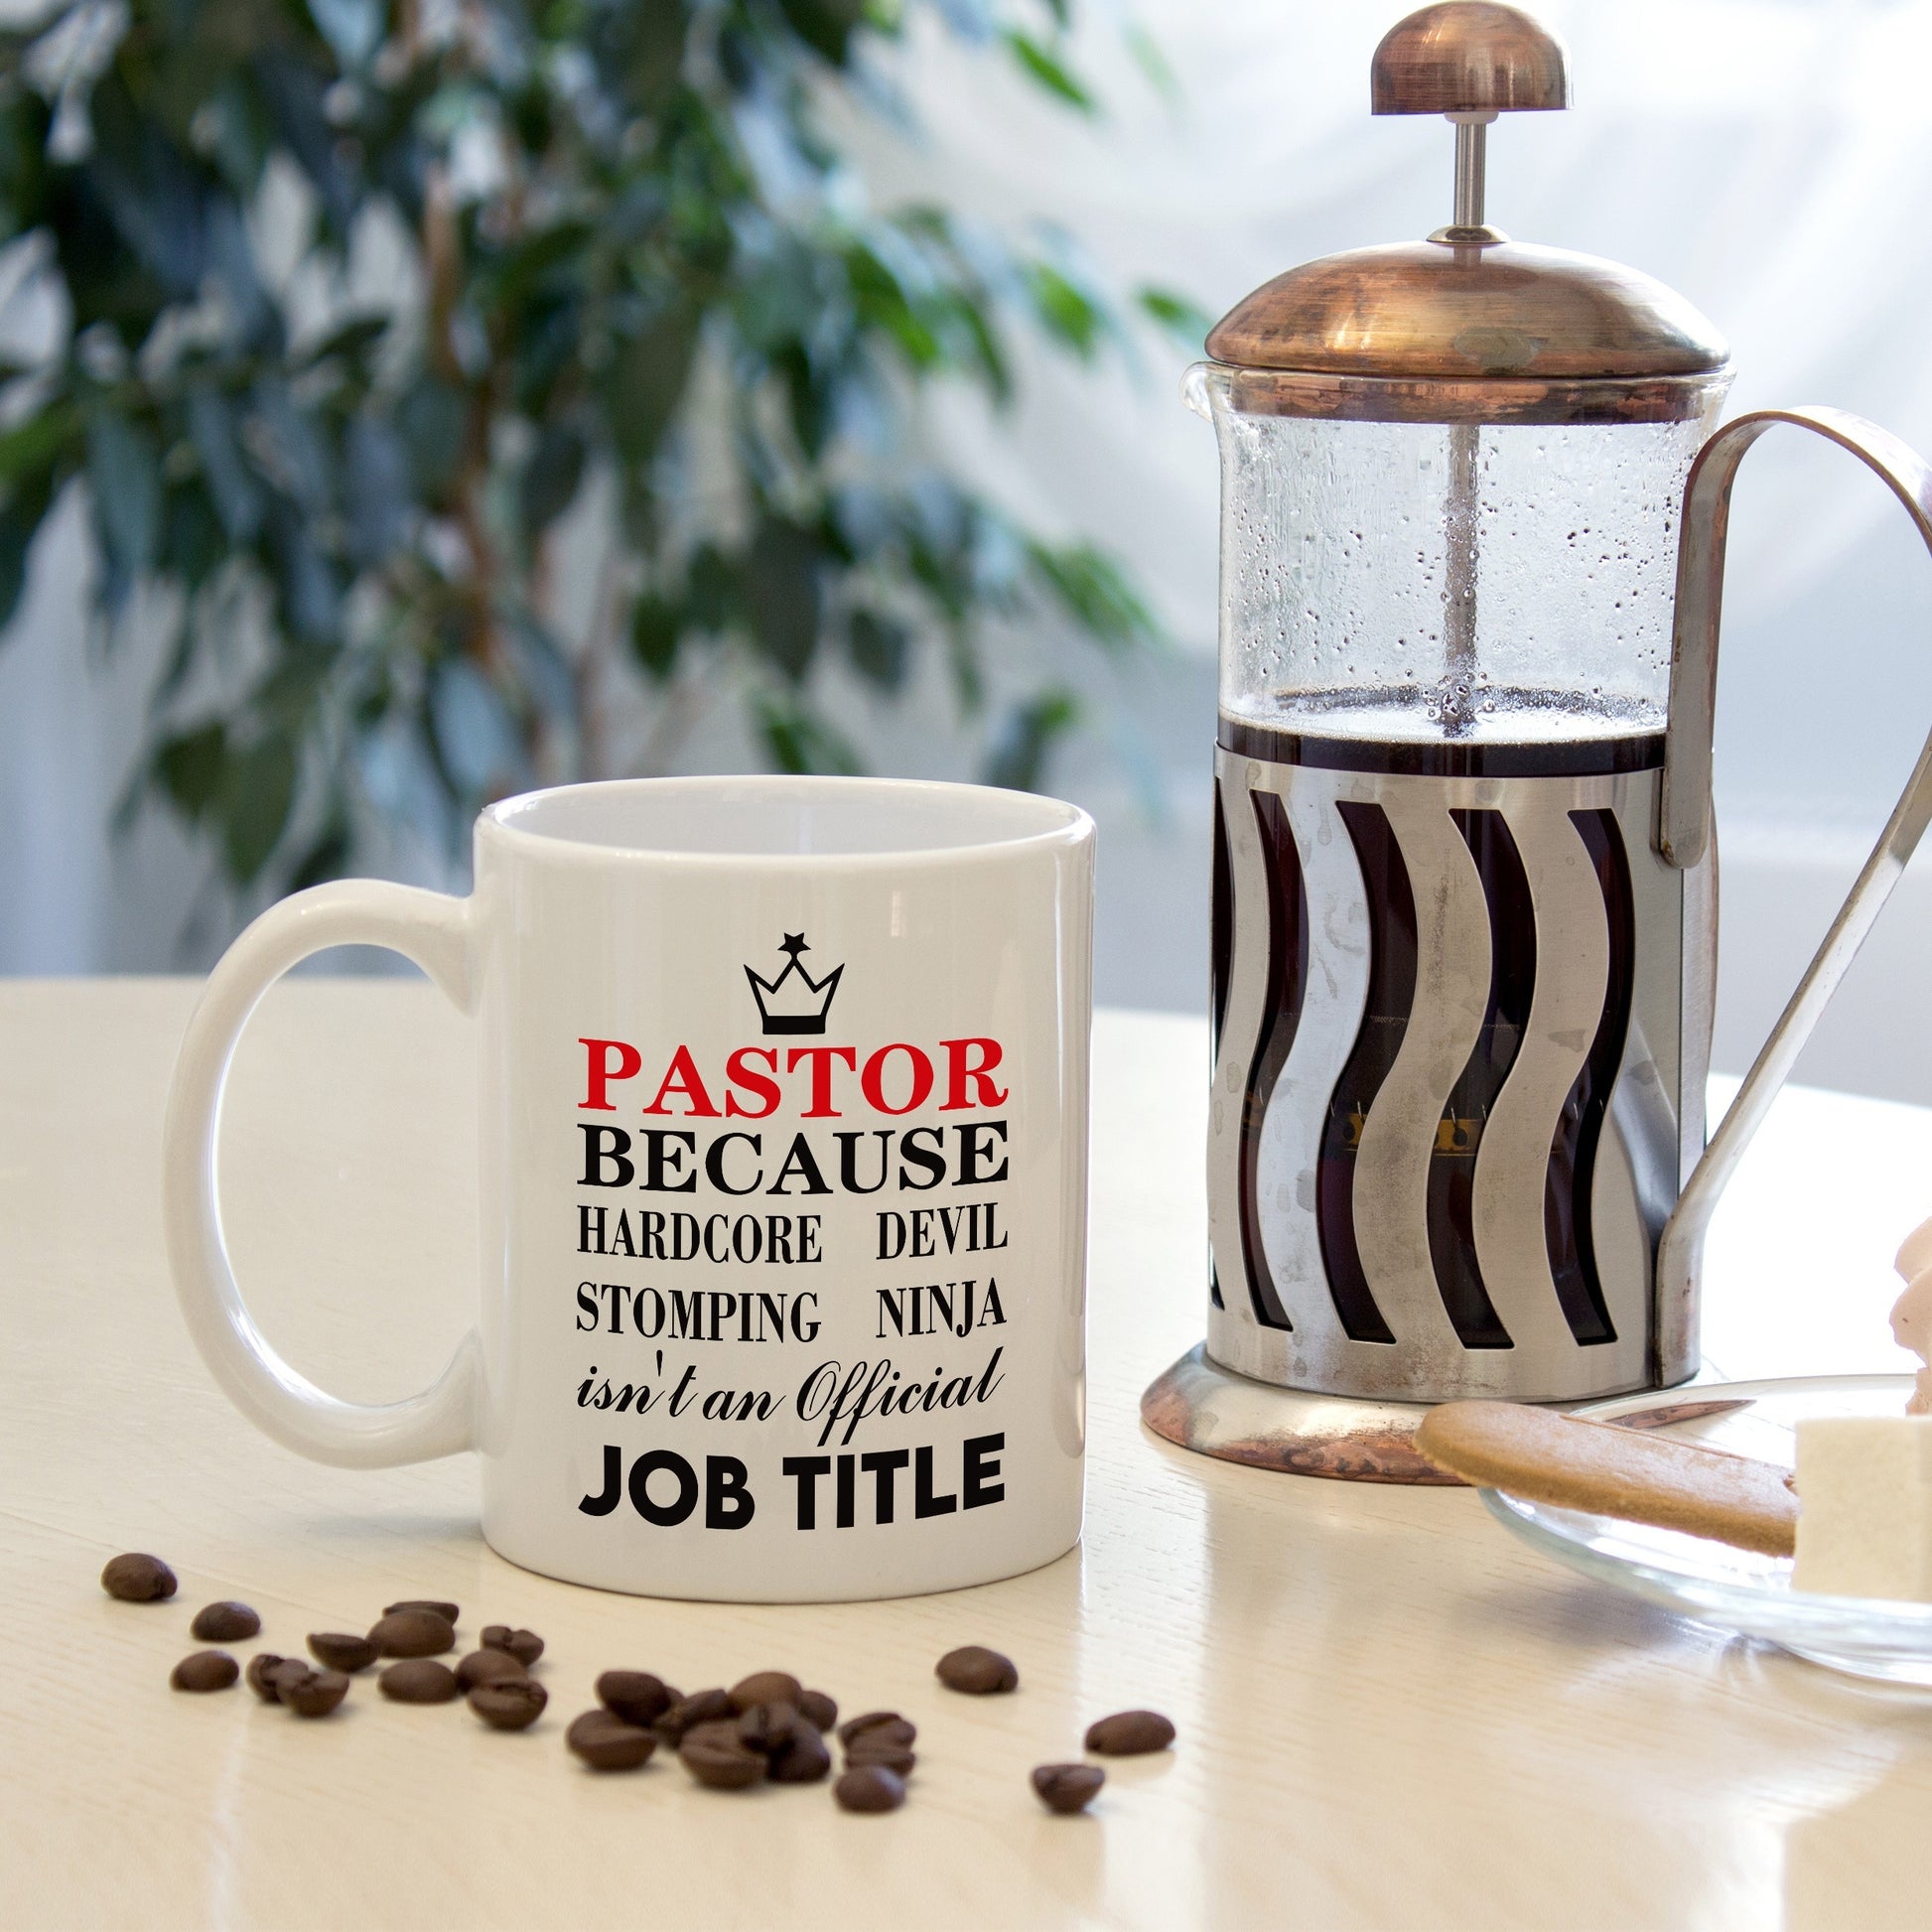 Pastor Because Hardcore Devil Stomping Ninja Isn't An Official Job Title Christian White Ceramic Mug claimedbygoddesigns